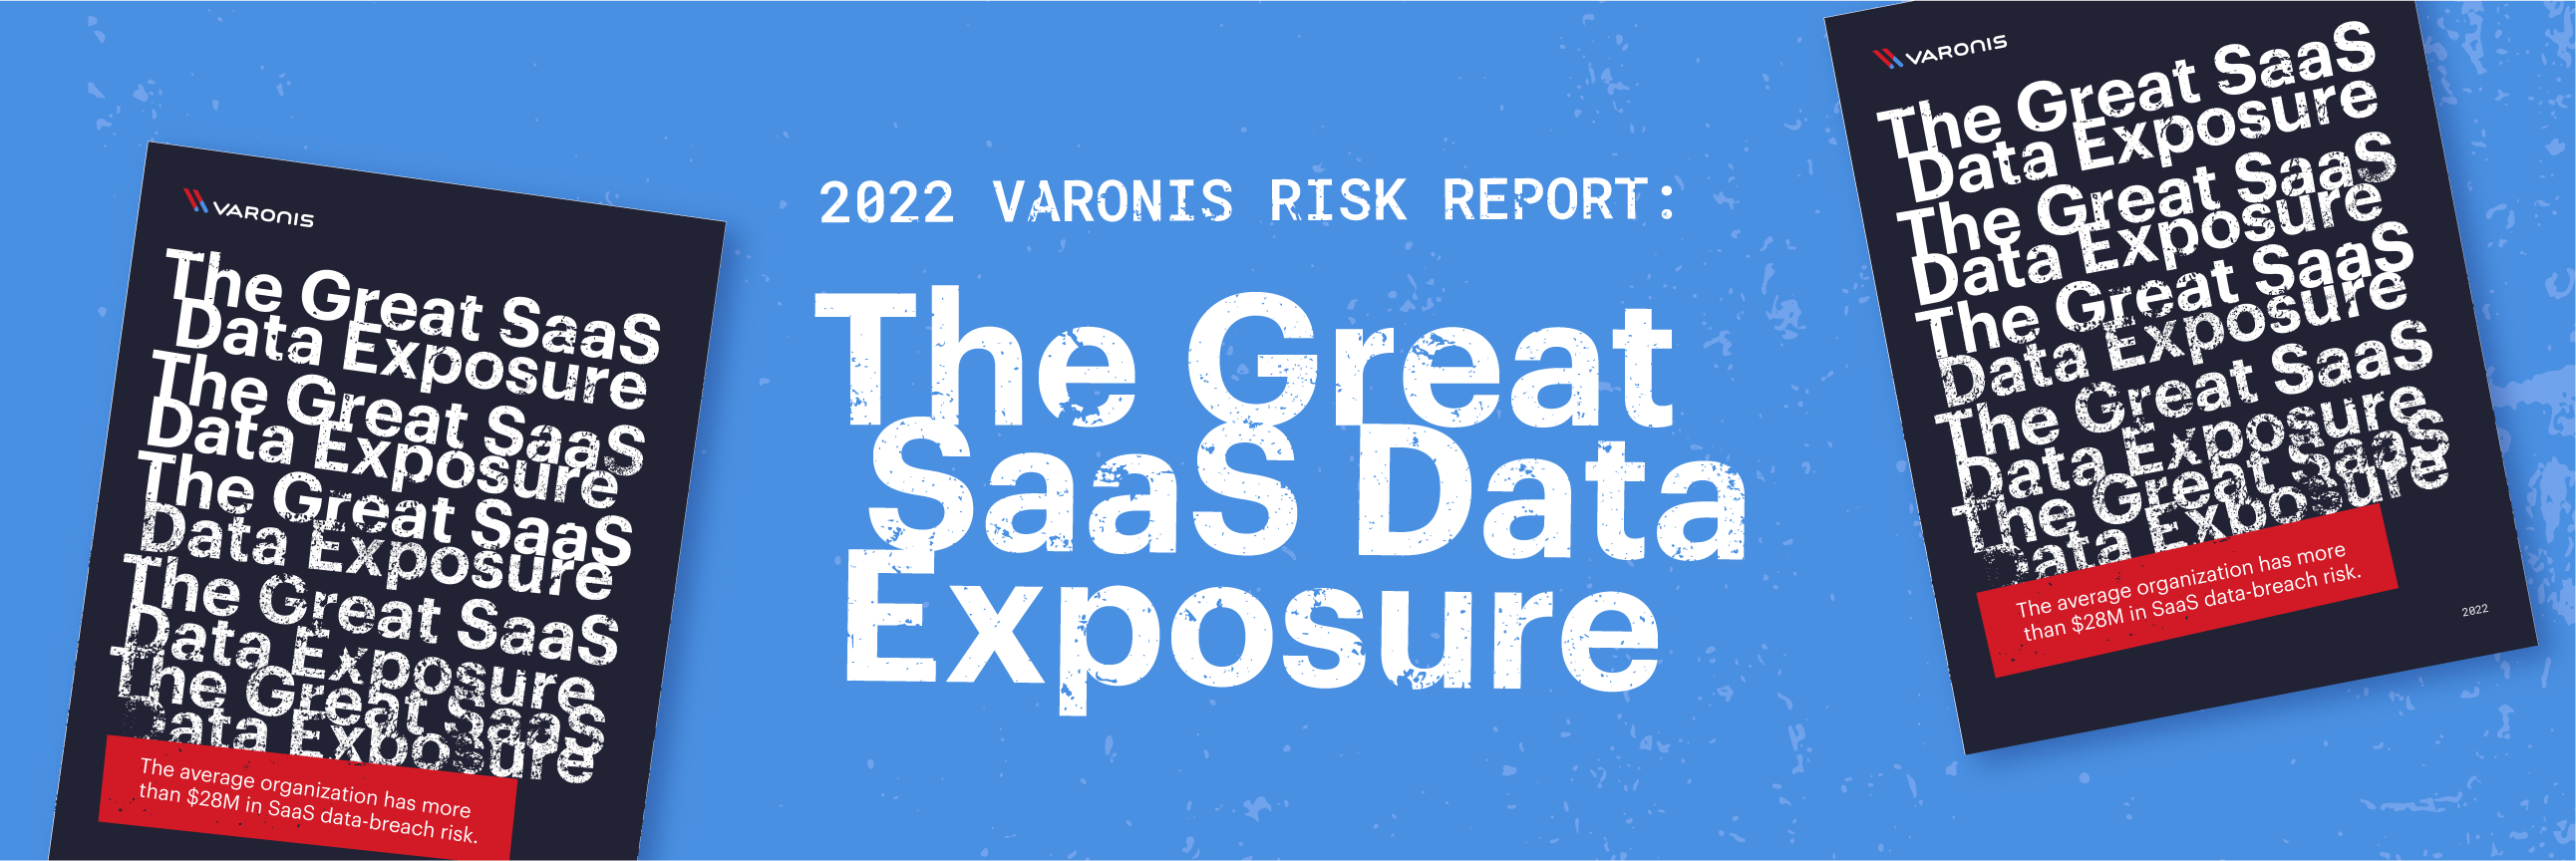 Relatório de risco em SaaS revela que dados em nuvem expostos são um risco de US$28M para uma empresa comum